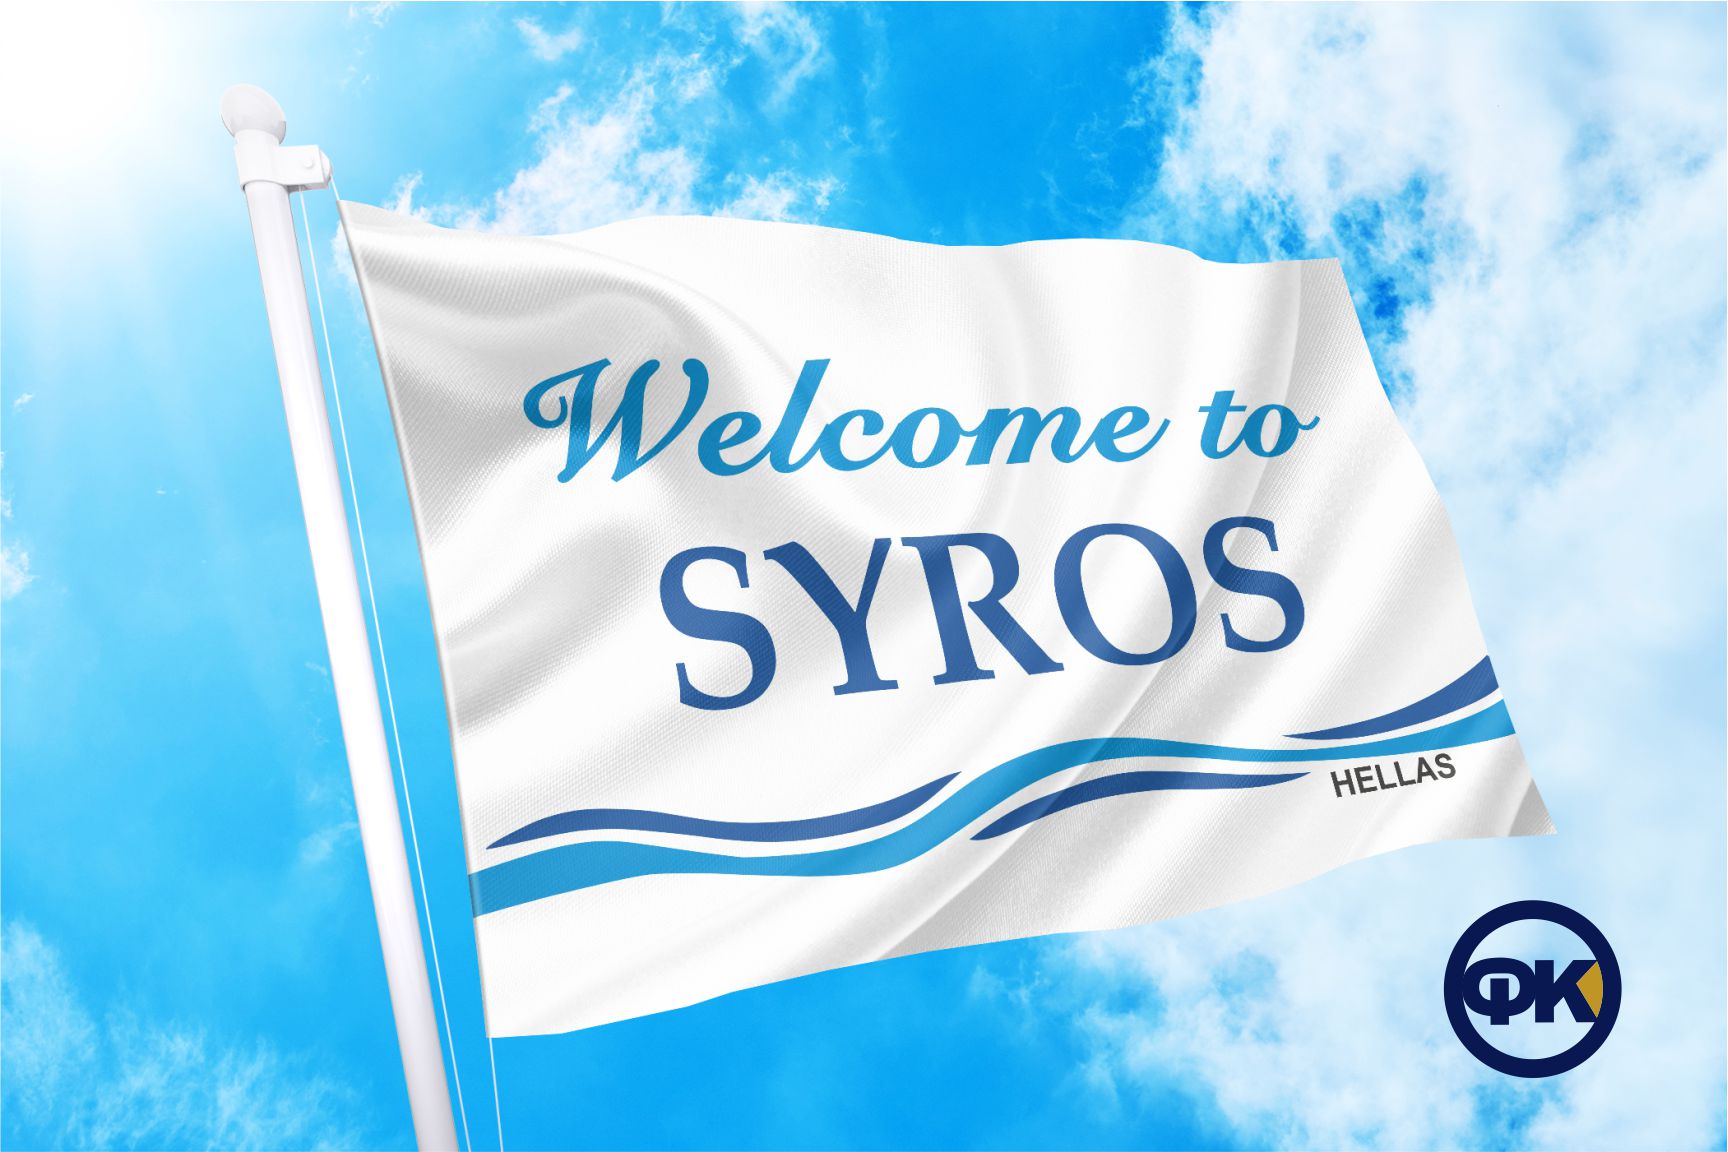 SYROS WELCOME FLAG COCONIS FLAGS ΣΗΜΑΙΕΣ ΚΟΚΚΩΝΗΣ ΑΓΟΡΑ ΤΙΜΗ